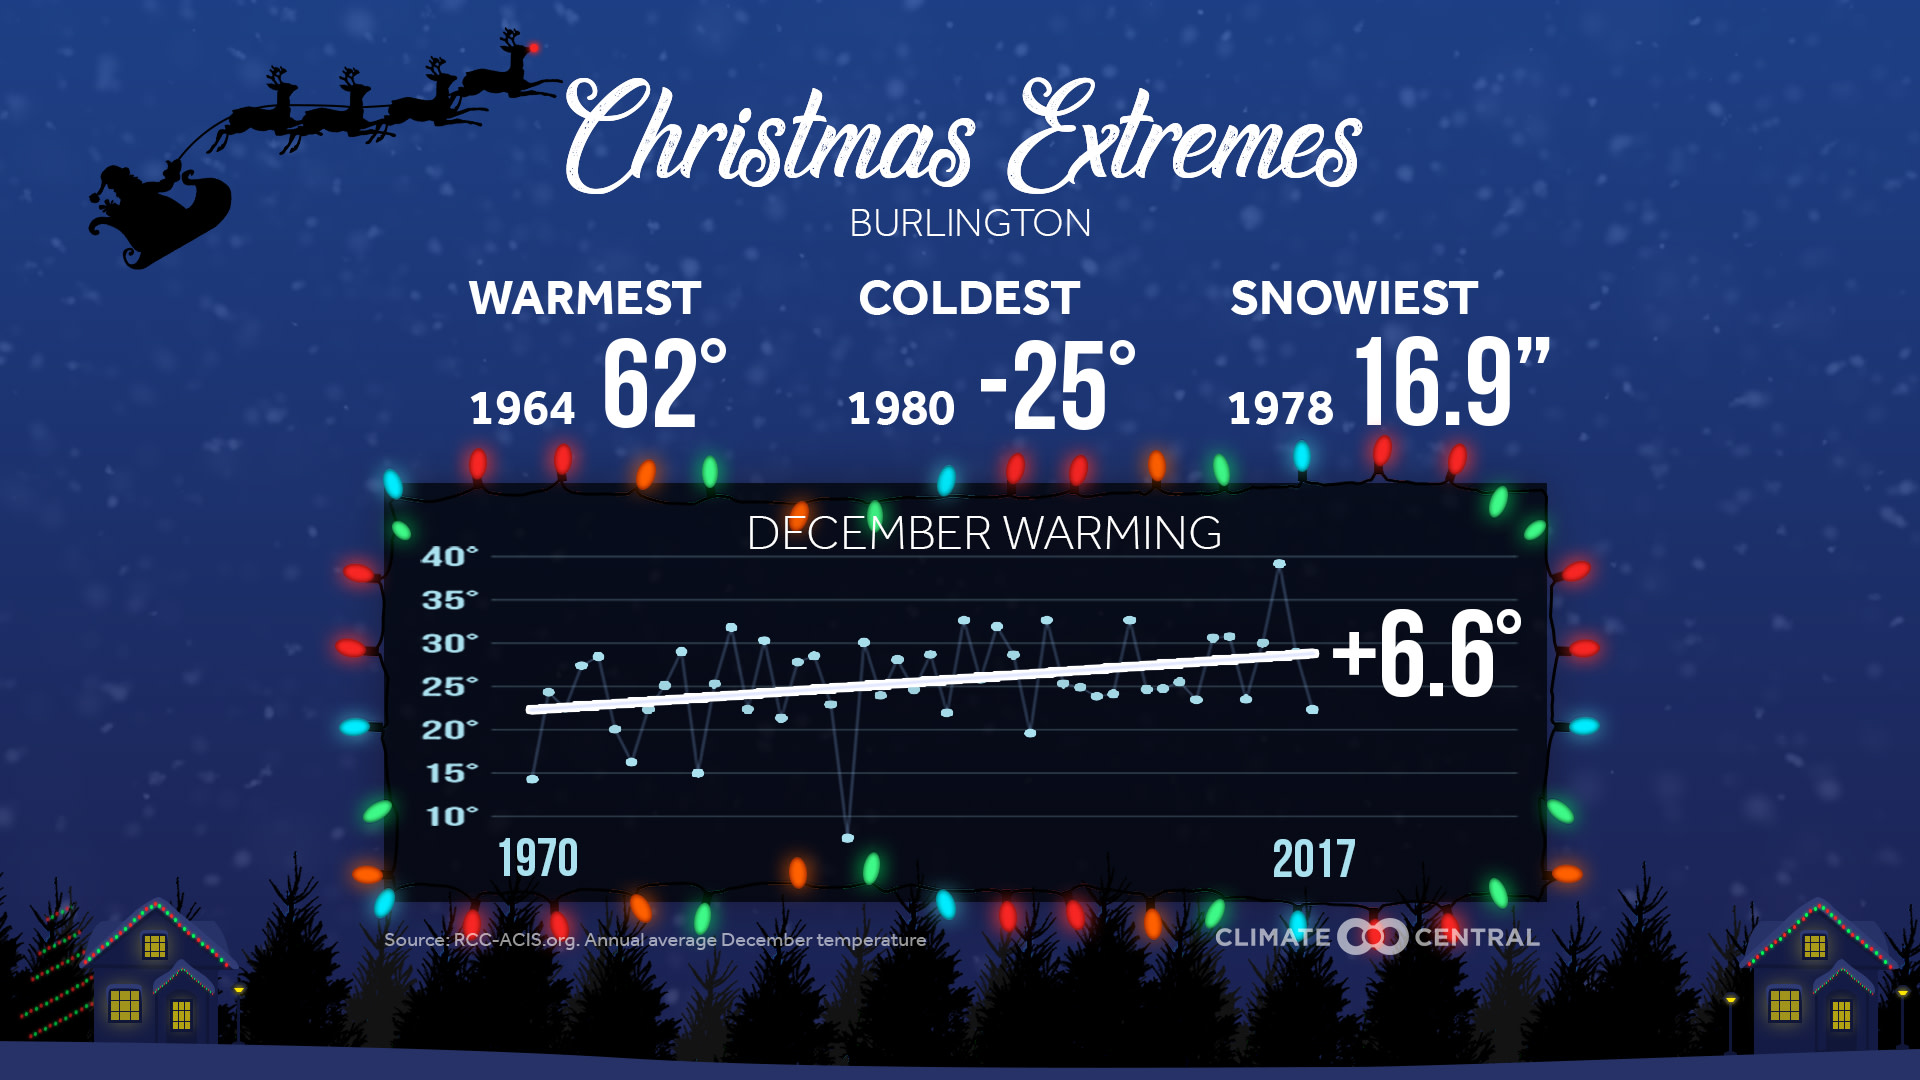 Holiday Warming & Extremes